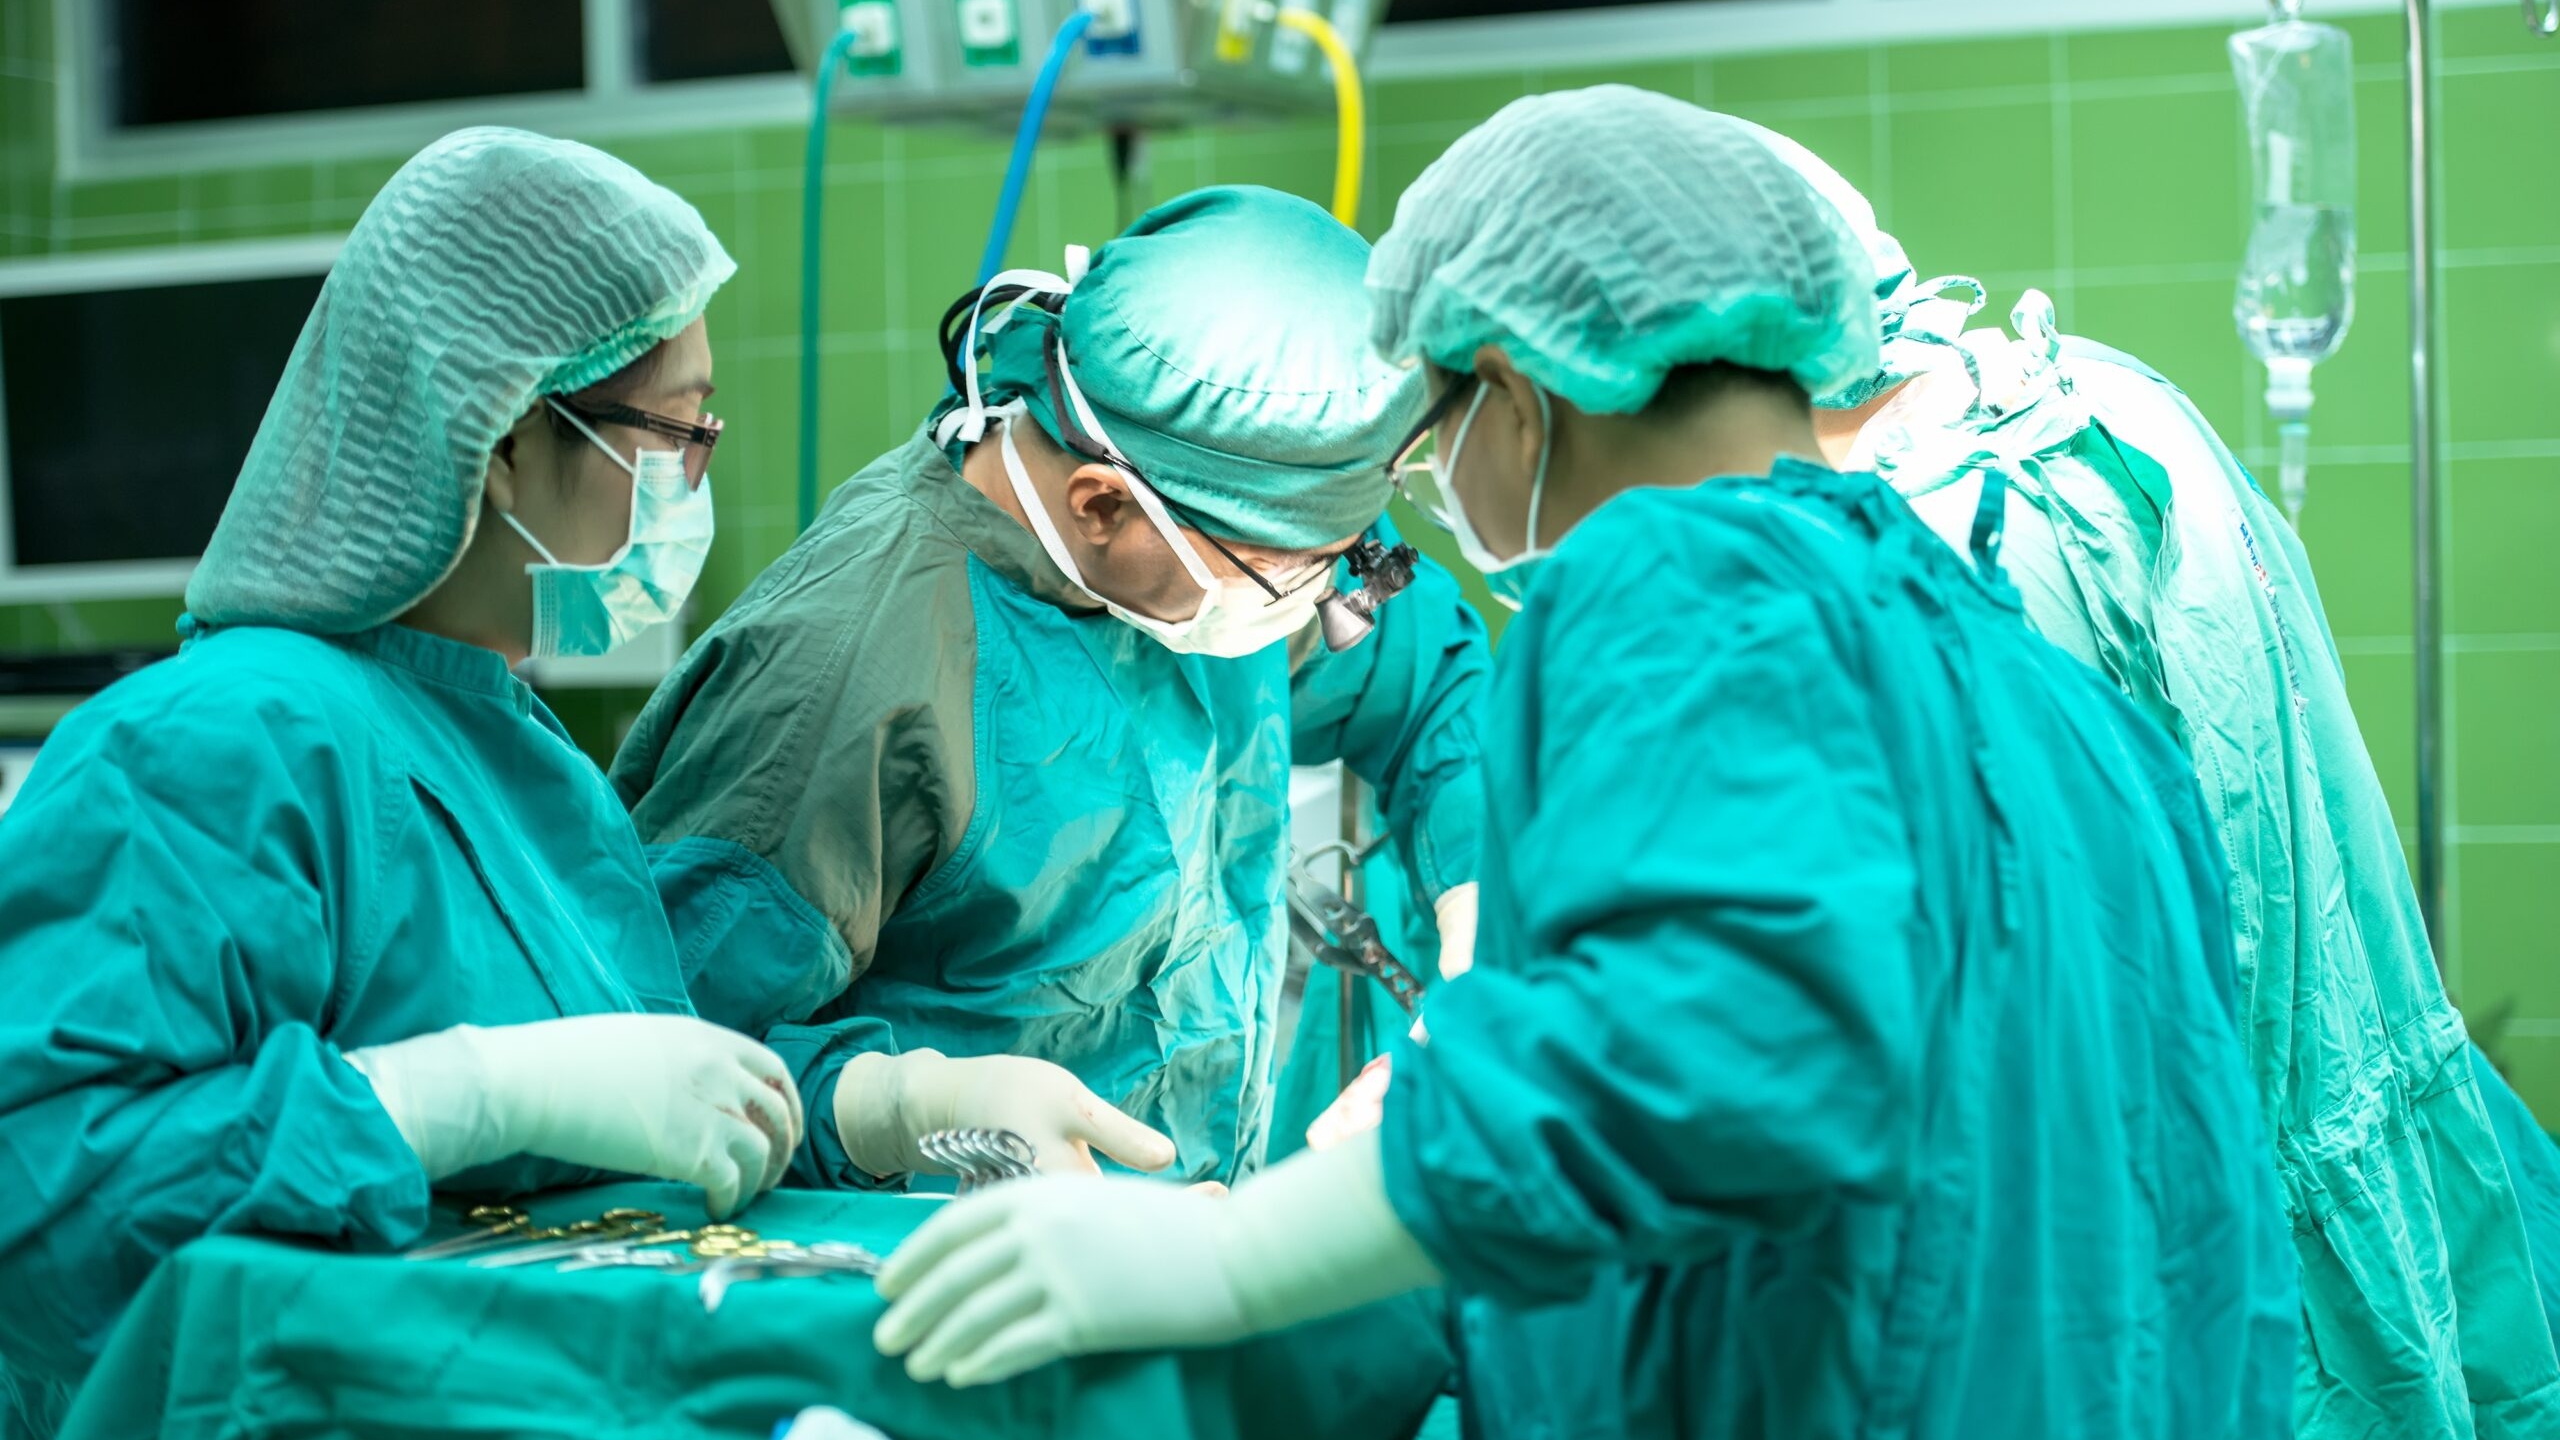 Московские врачи спасли женщину, сделав редкую операцию по пересадке тонкой кишки